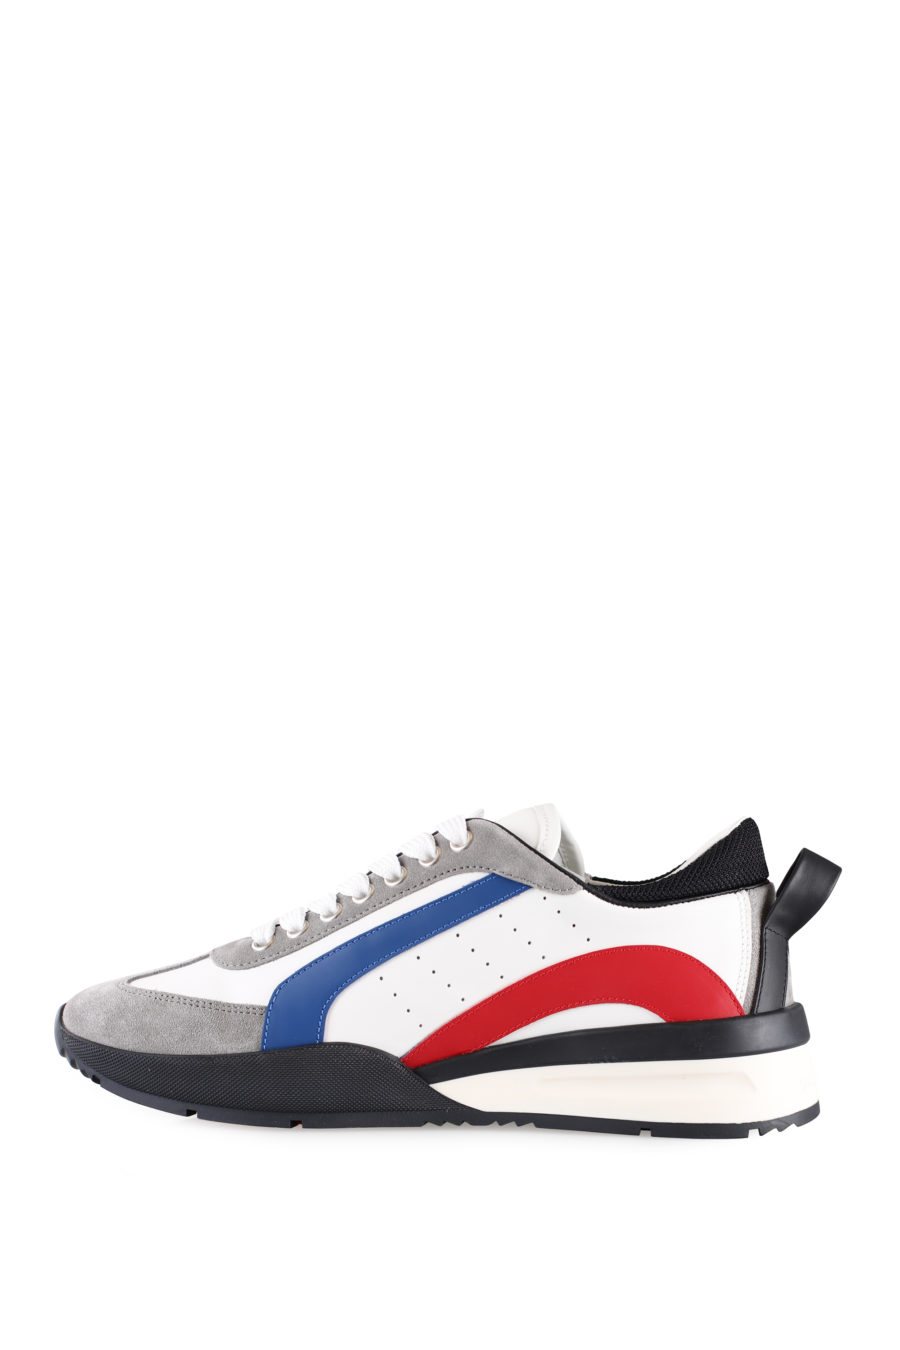 Zapatillas blancas multicolor y logo pequeño - IMG 0022